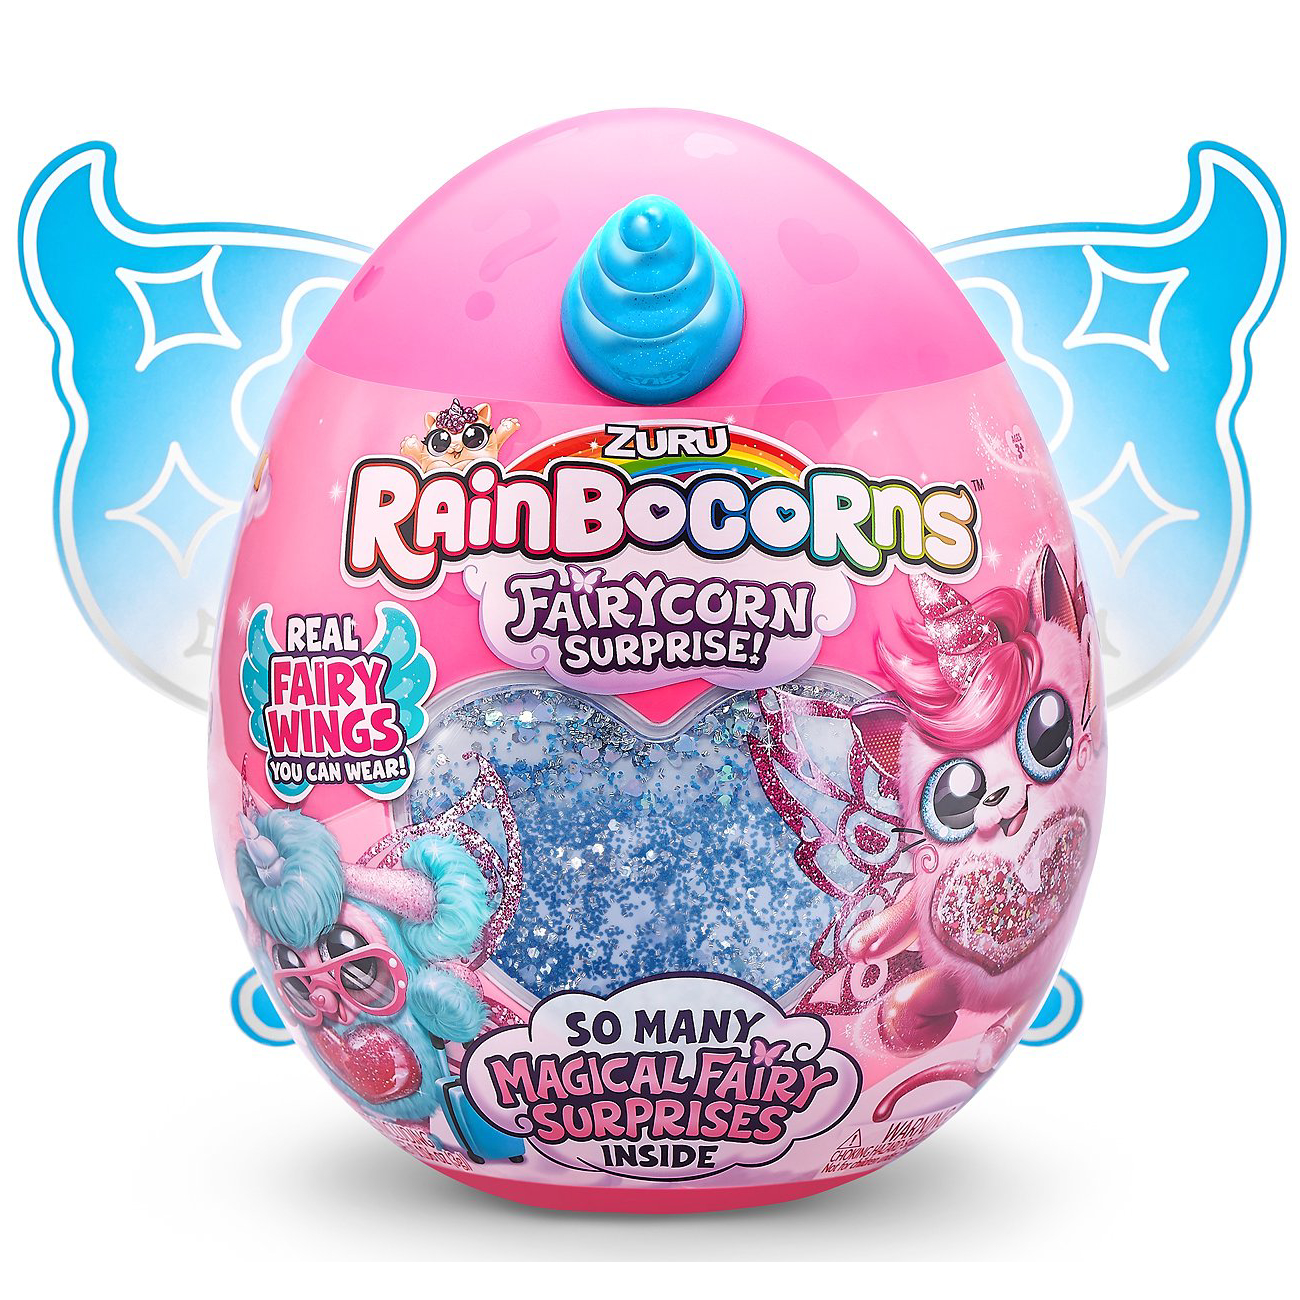 Игрушка Zuru Rainbocorns Puppycorn Fairycorn Surprise сюрприз в яйце в ассортименте